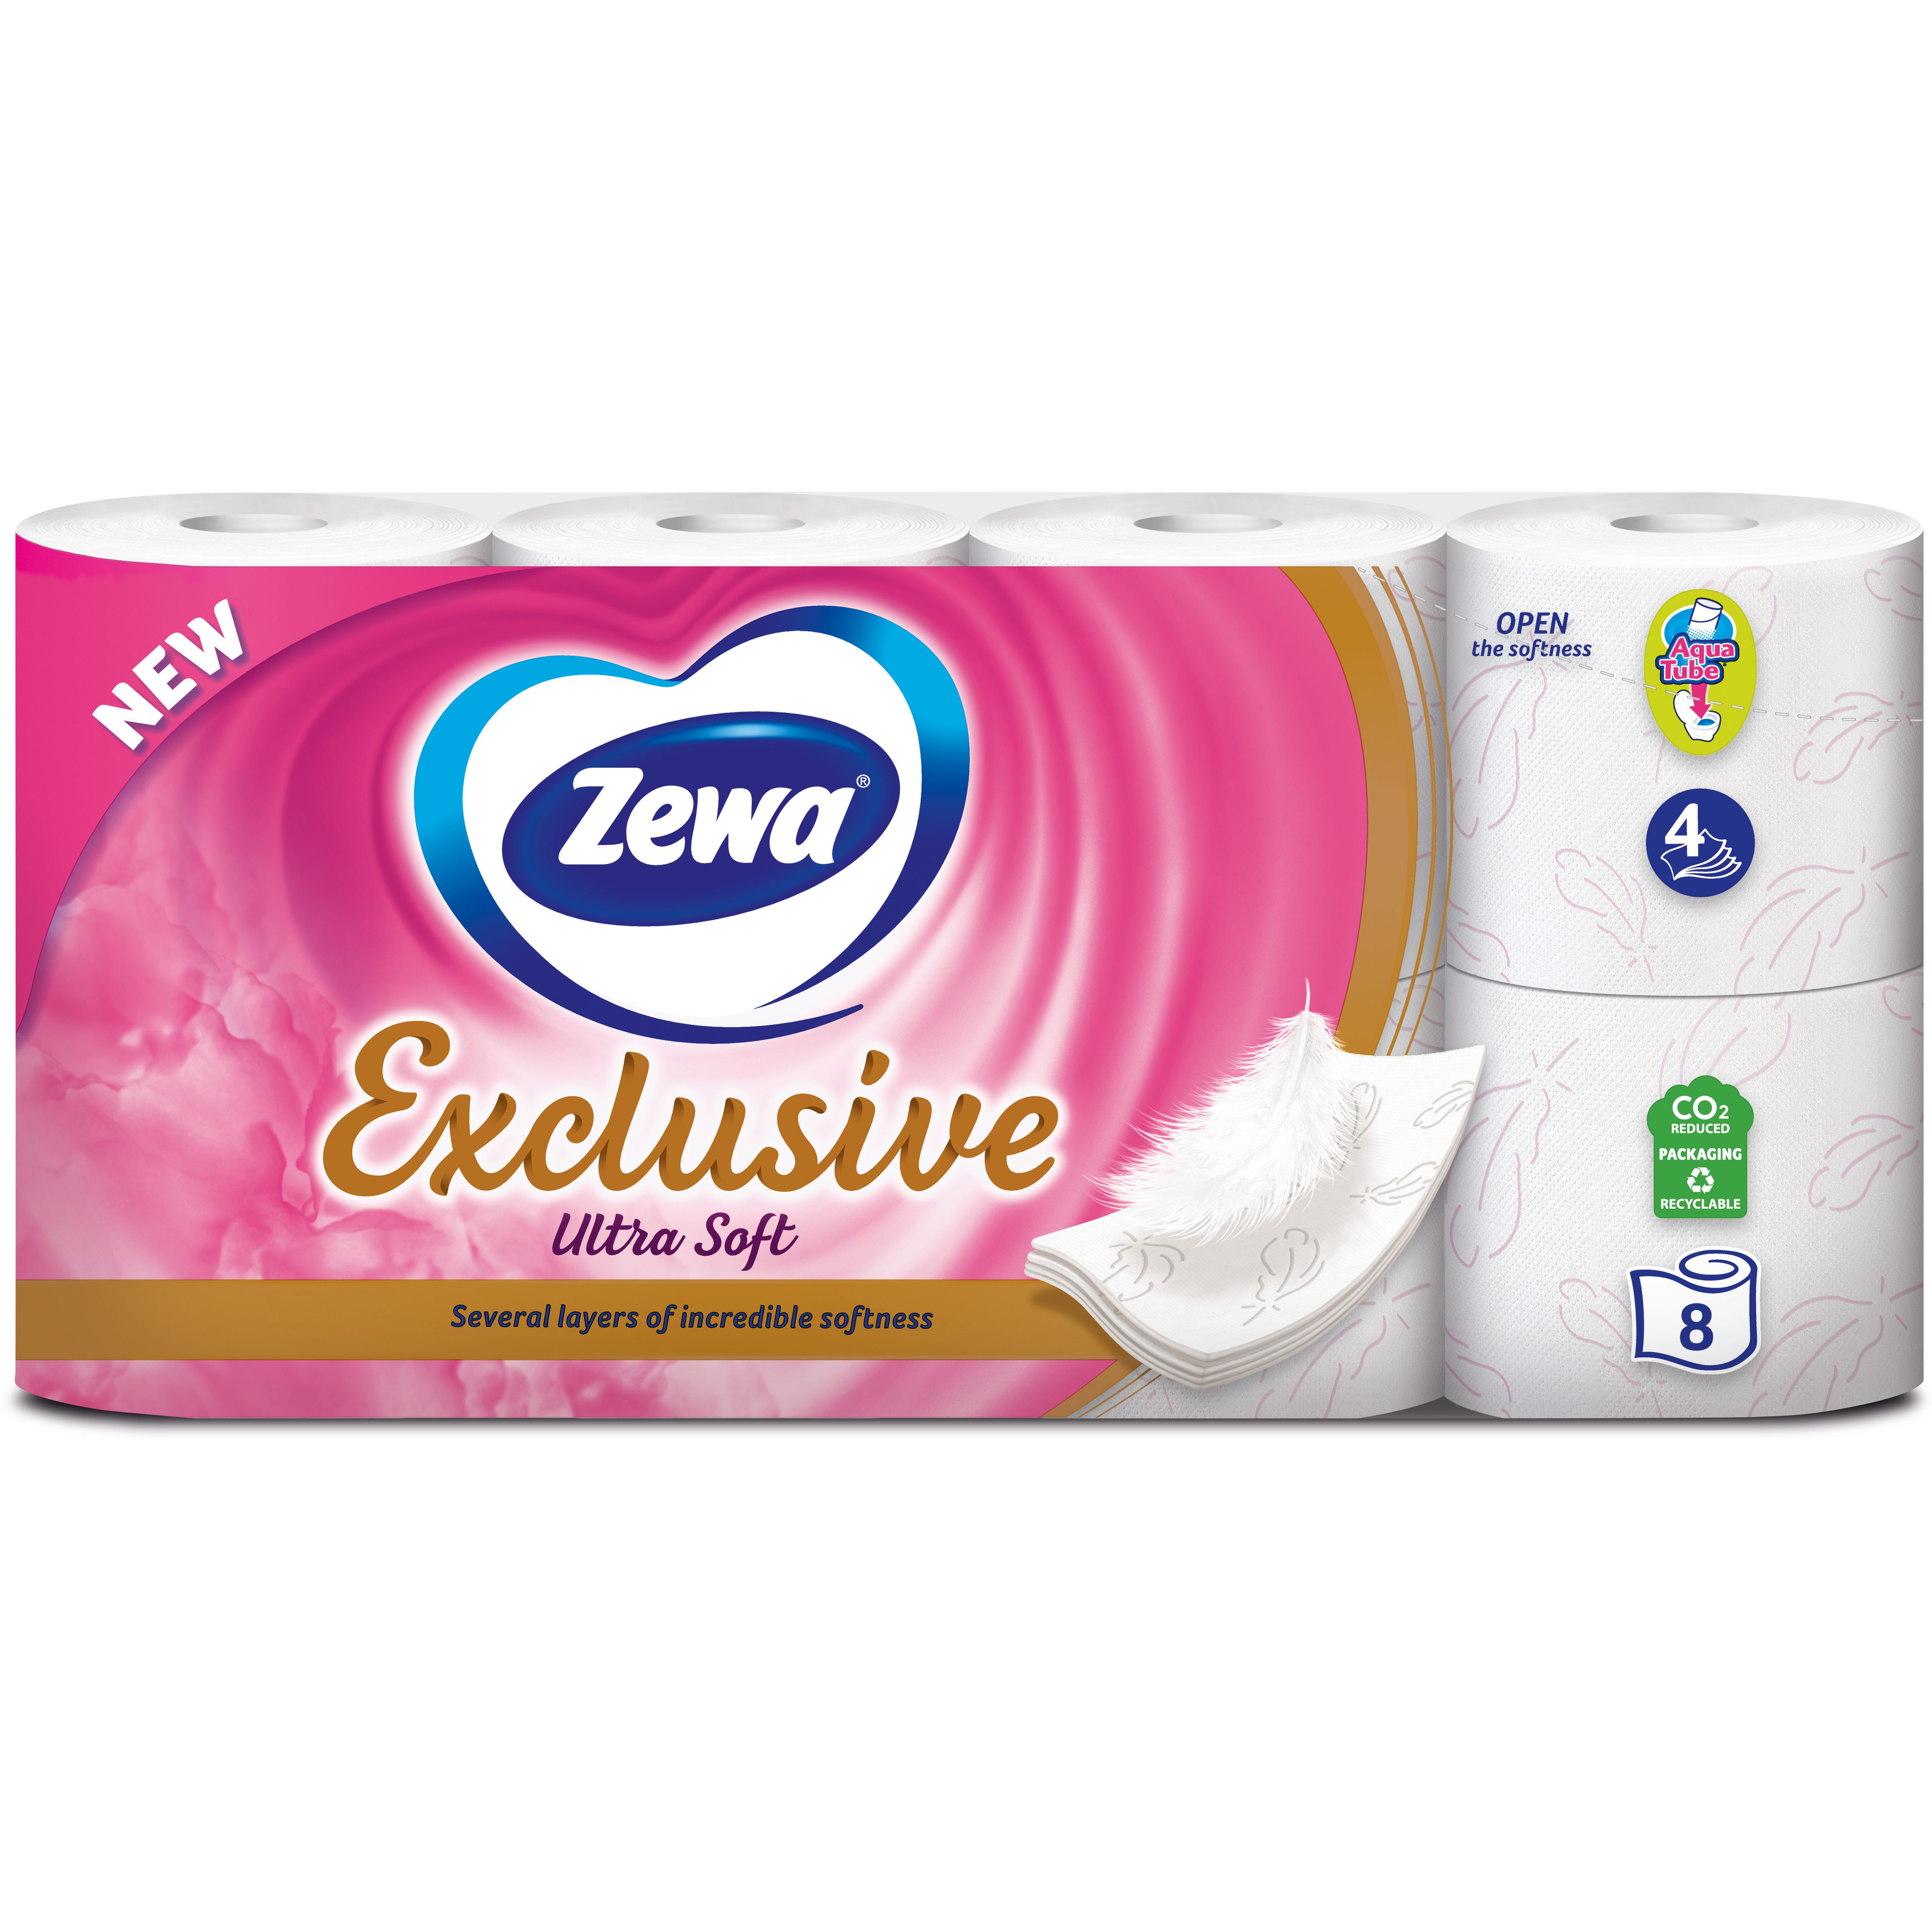 Туалетная бумага Zewa Exclusive Ultra Soft четырехслойная 8 рулонов - фото 2